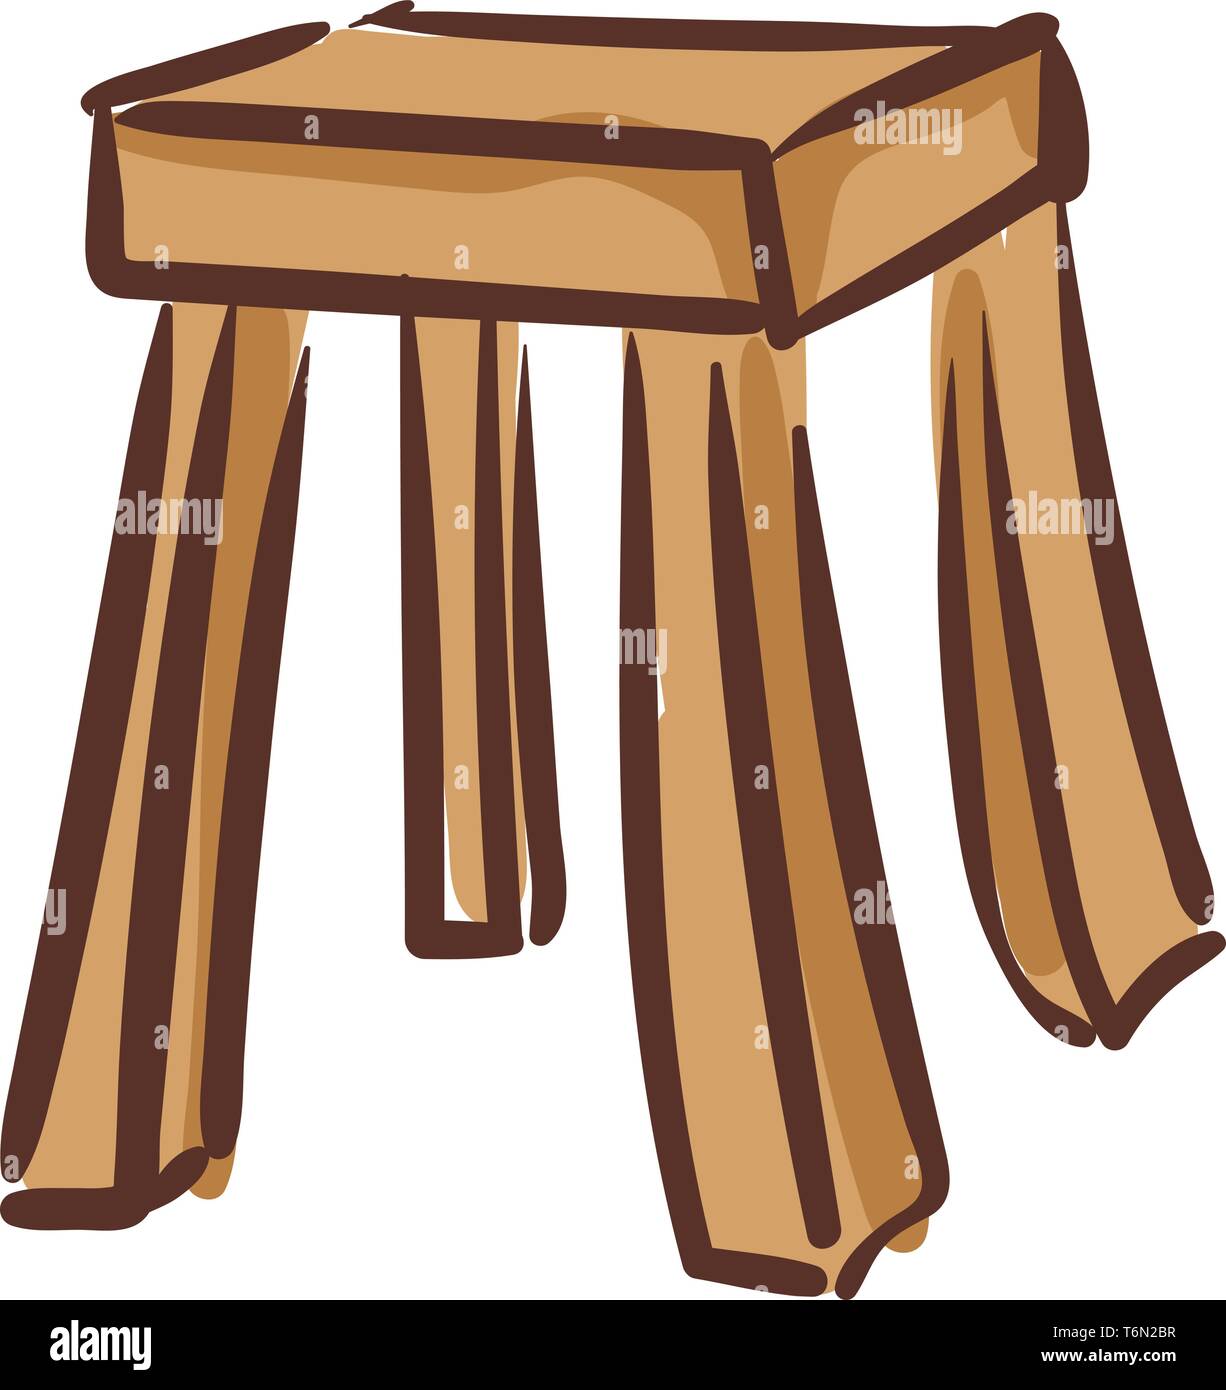 D'un clipart de couleur brun en bois tabouret avec quatre pieds et un siège adapté pour une seule personne de s'asseoir ou certains objets d'être placé sur le dessus Illustration de Vecteur